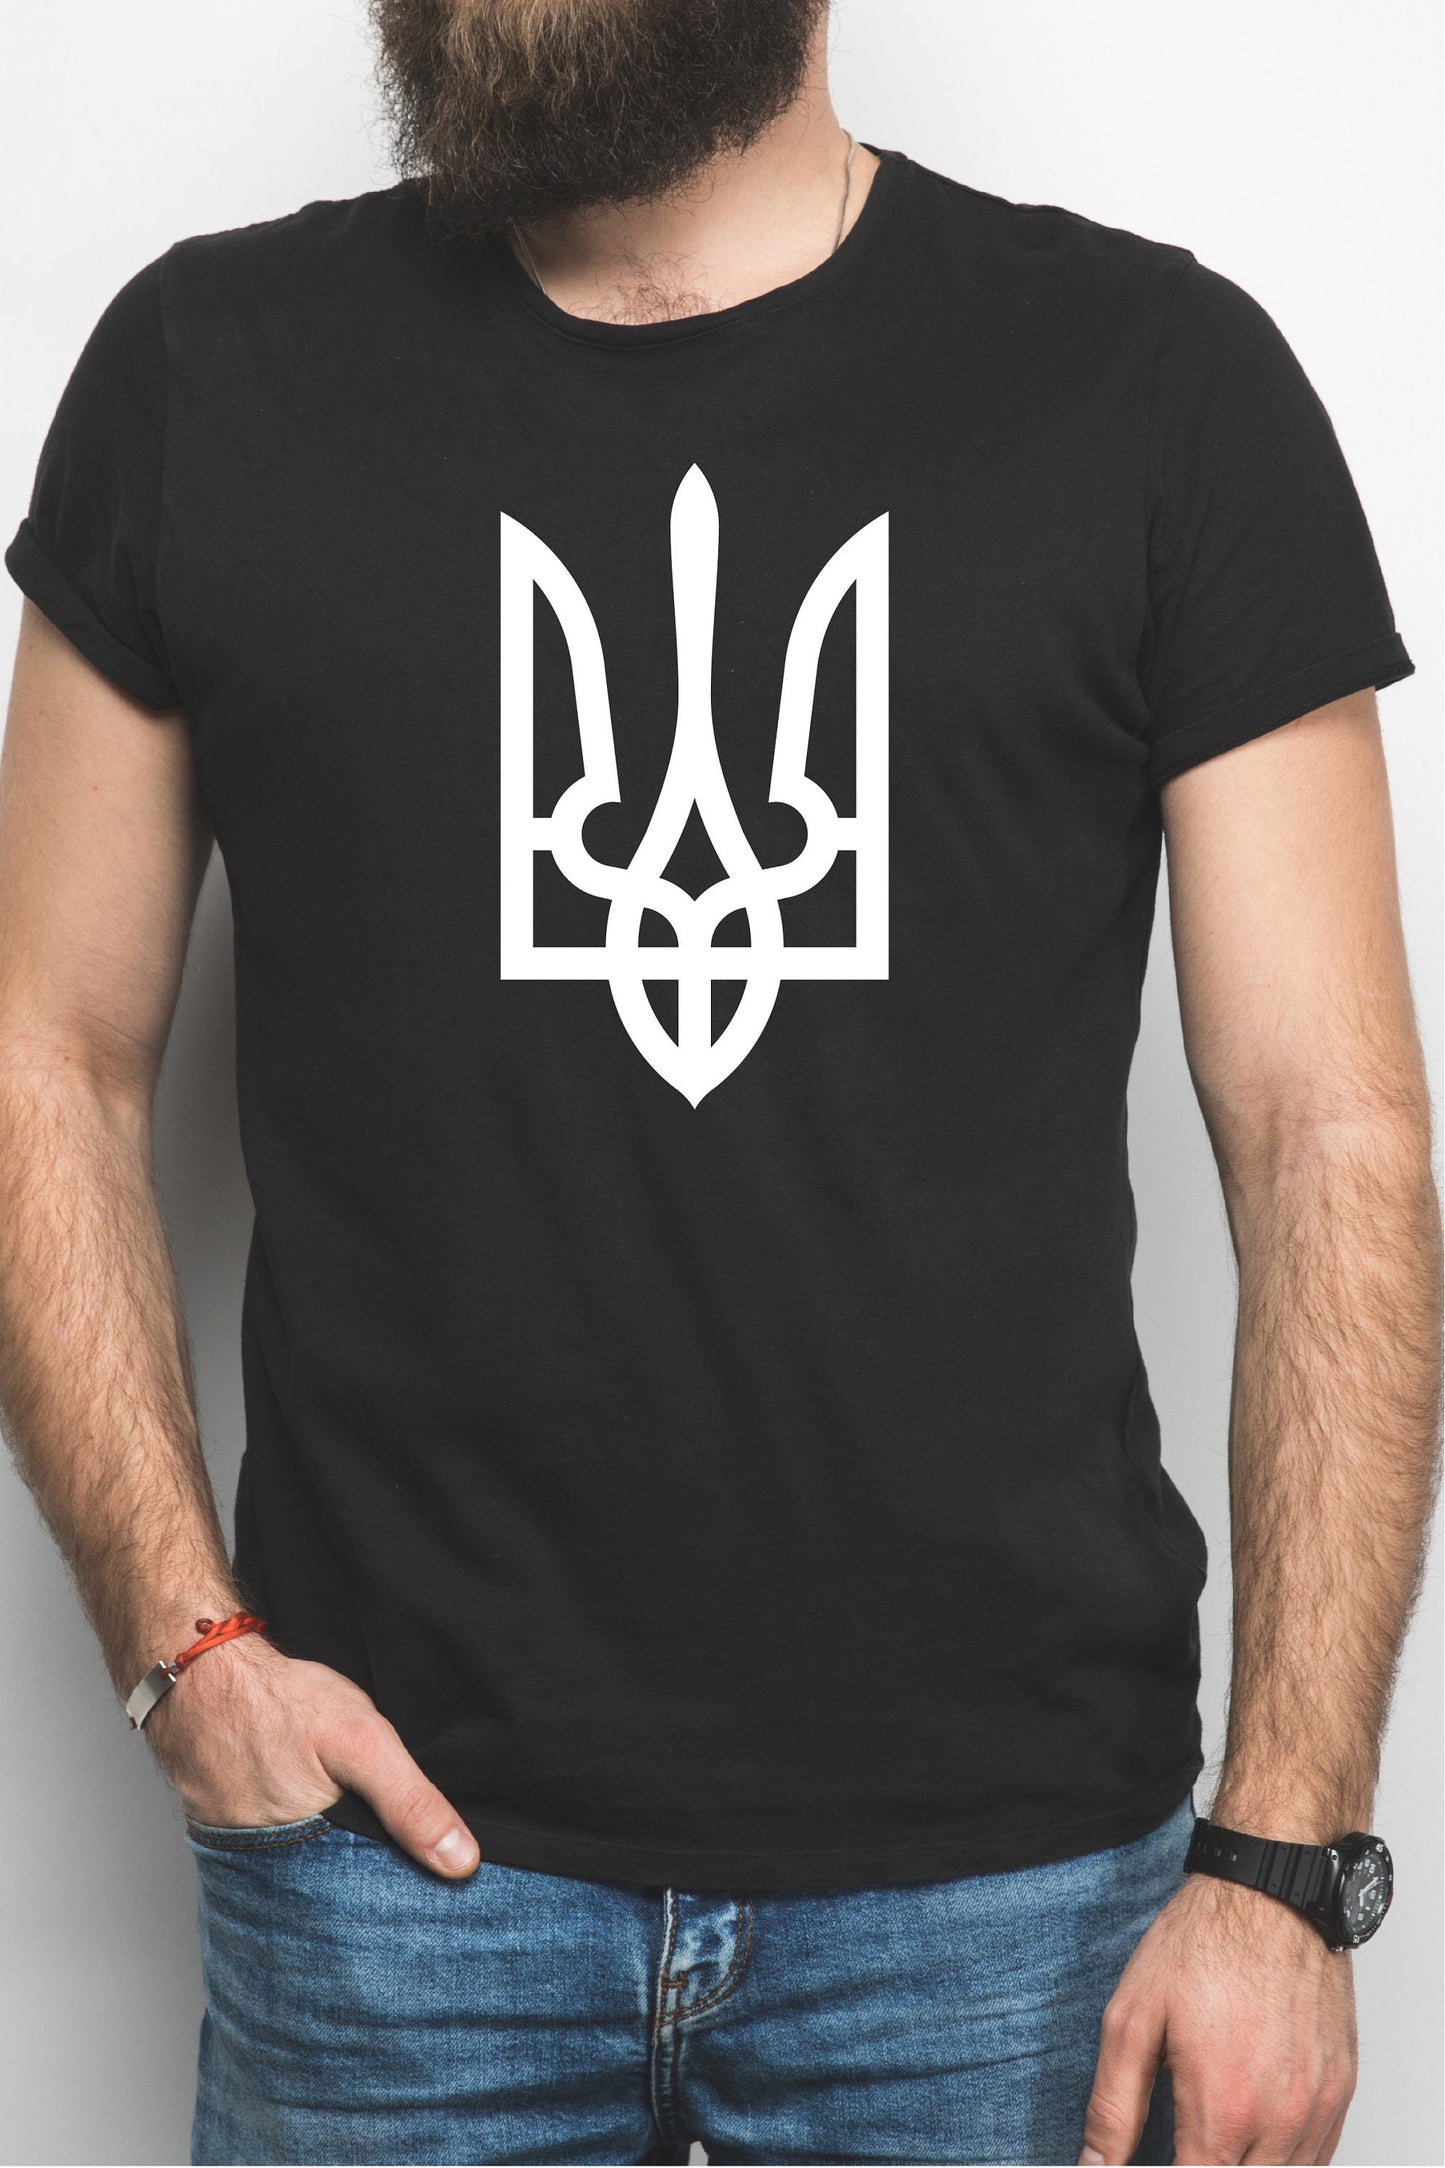 Ukraine Coat of Arms Charity T-Shirt |  Love Ukraine Tee | Anti-Putin tshirt | Charity tshirt